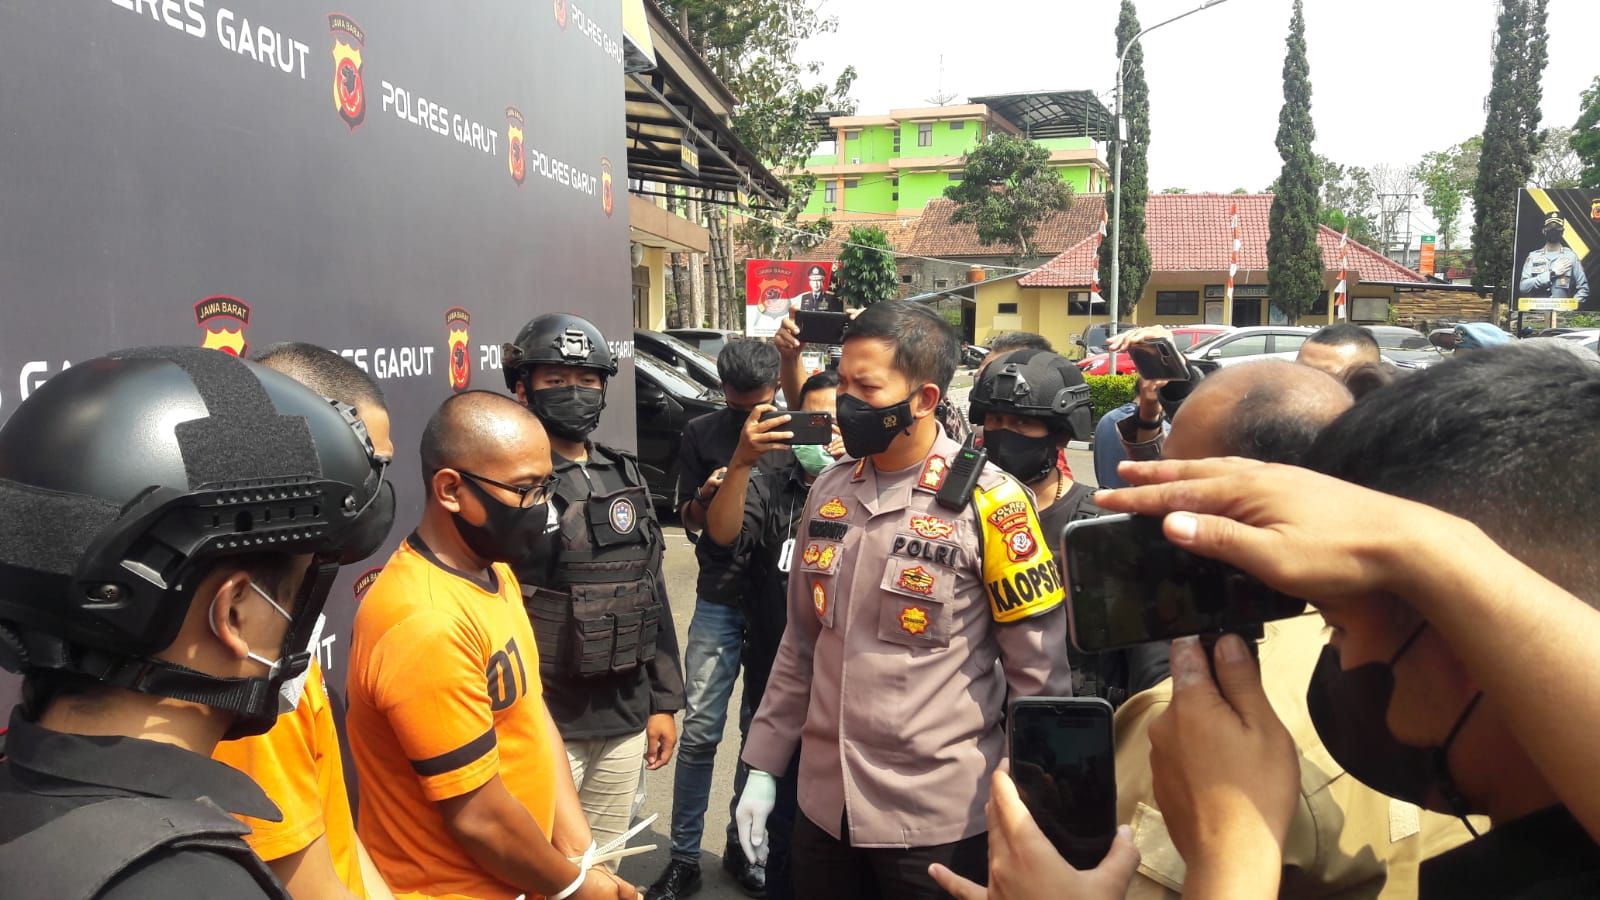  Kapolres Garut AKBP Wirdhanto Hadicaksono menanyai tersangka bandar dan pengepul judi online togel yang berhasil diamankan di salah satu kios di Pasar Guntur Ciawitali Garut.*